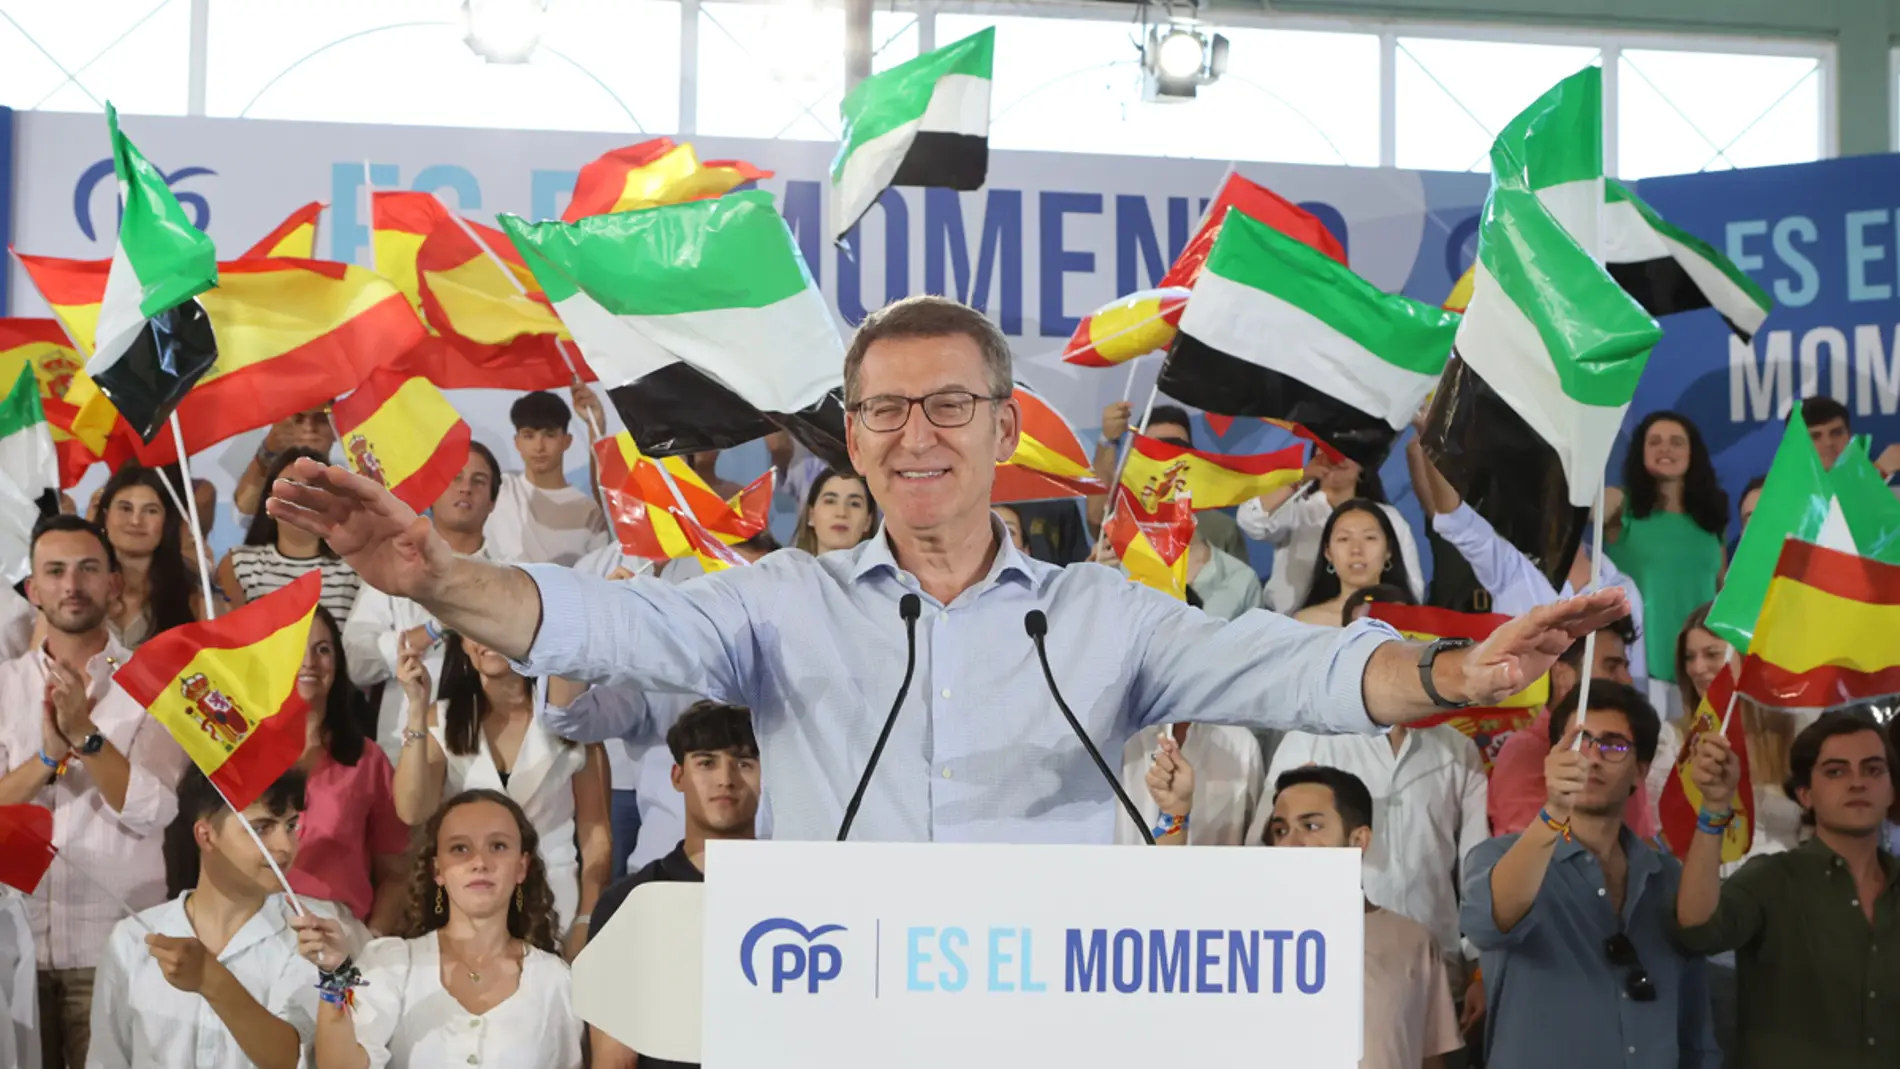 El PP amplía su ventaja mientras crece la fuga de votos del PSOE a Feijóo